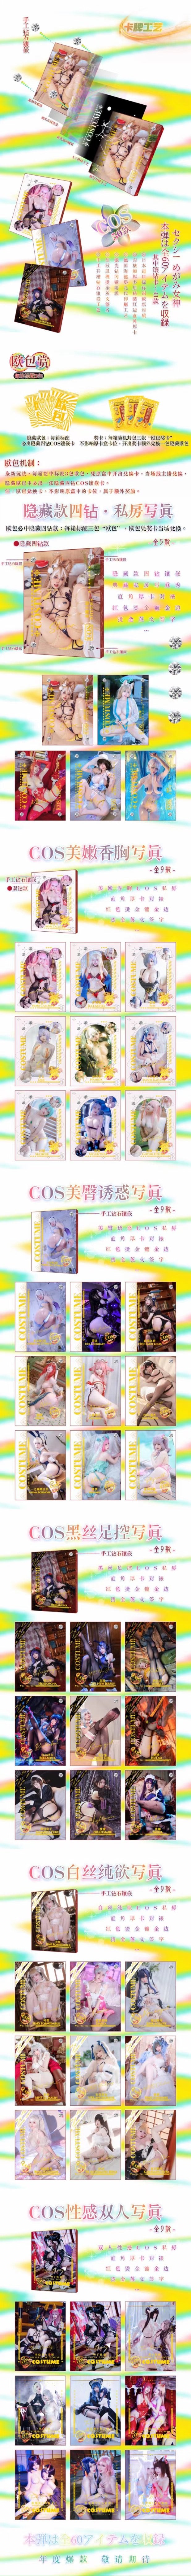 🔥 Costumer 4 Sealed Blind Box Goddess Story Anime 🔥